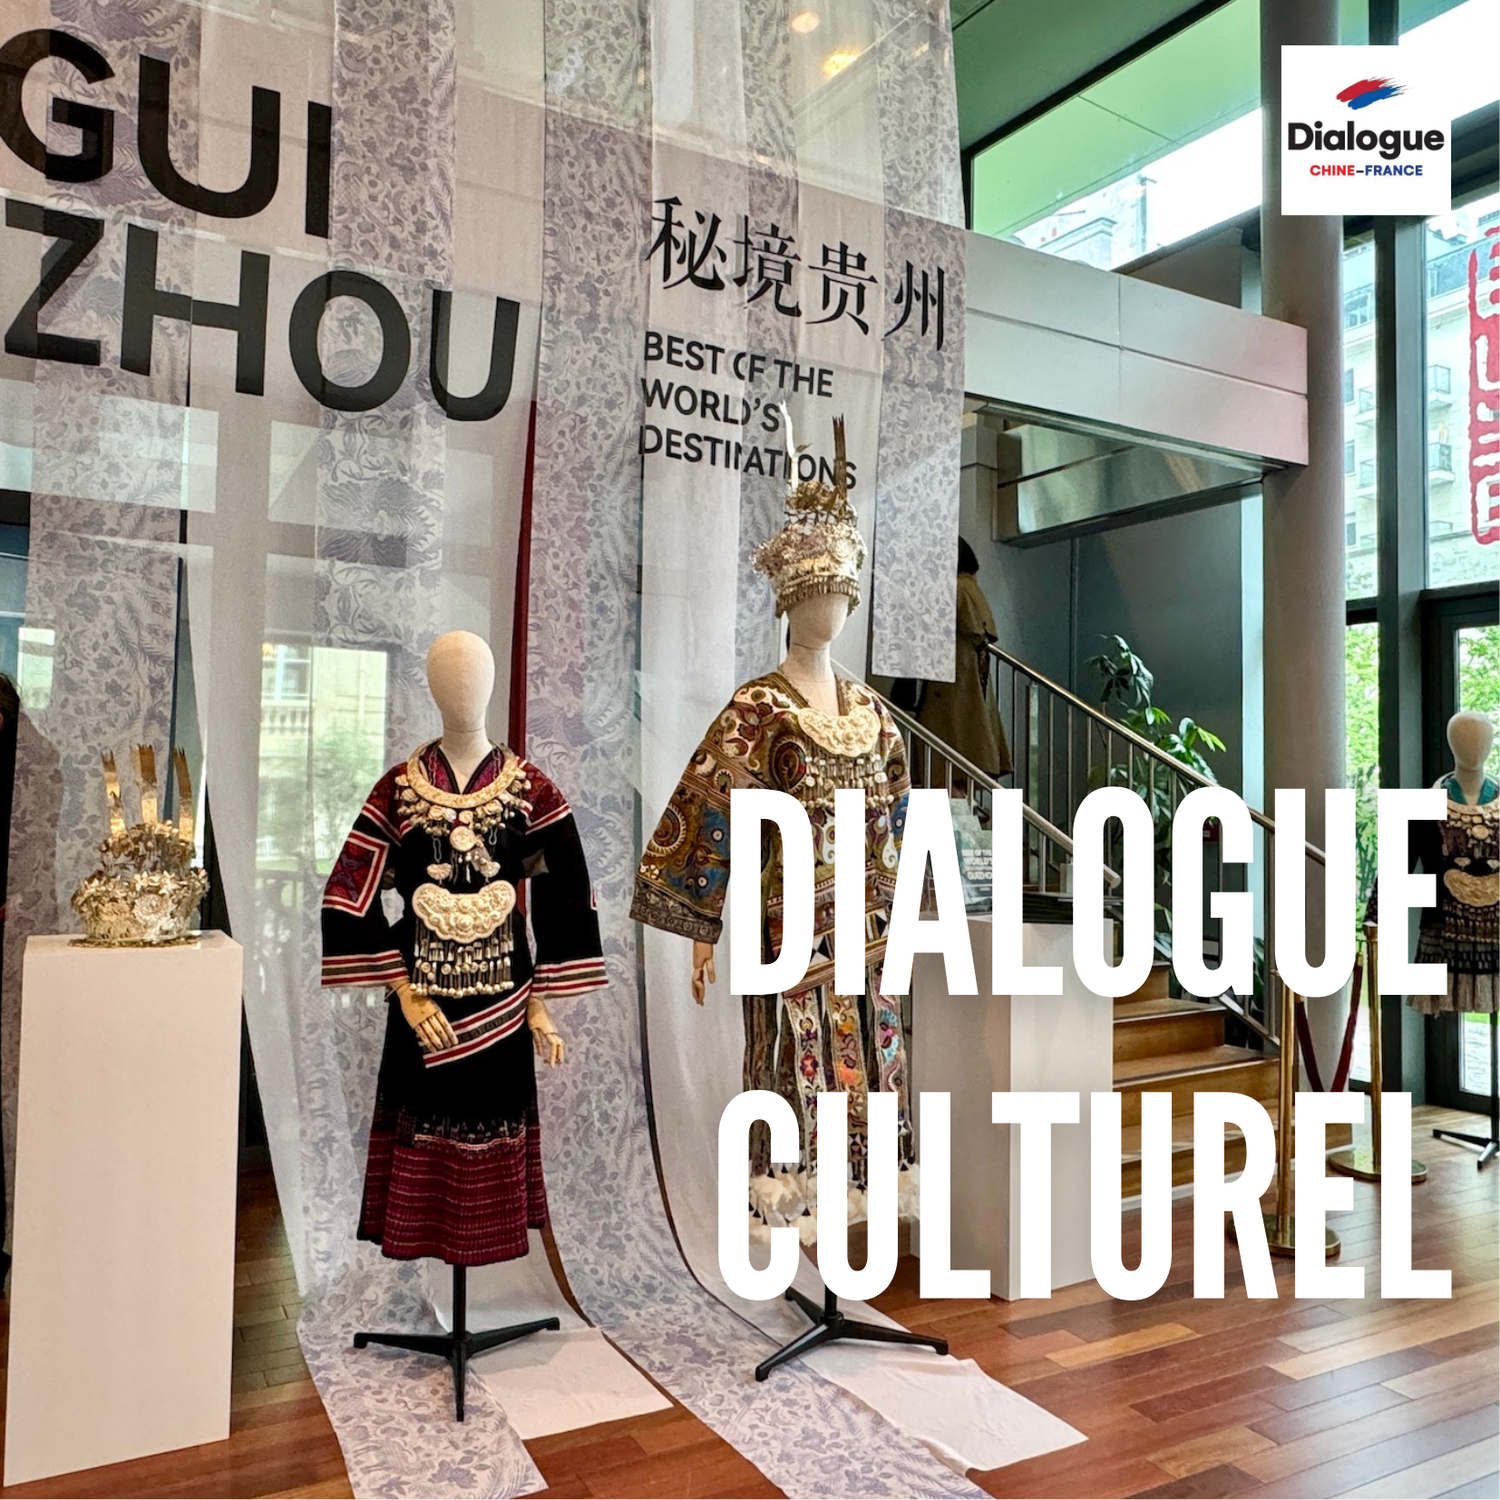 Exposition « Guizhou, l'une des meilleures destinations du monde » au Centre culturel de Chine à Paris : un pont culturel et touristique franco-chinois